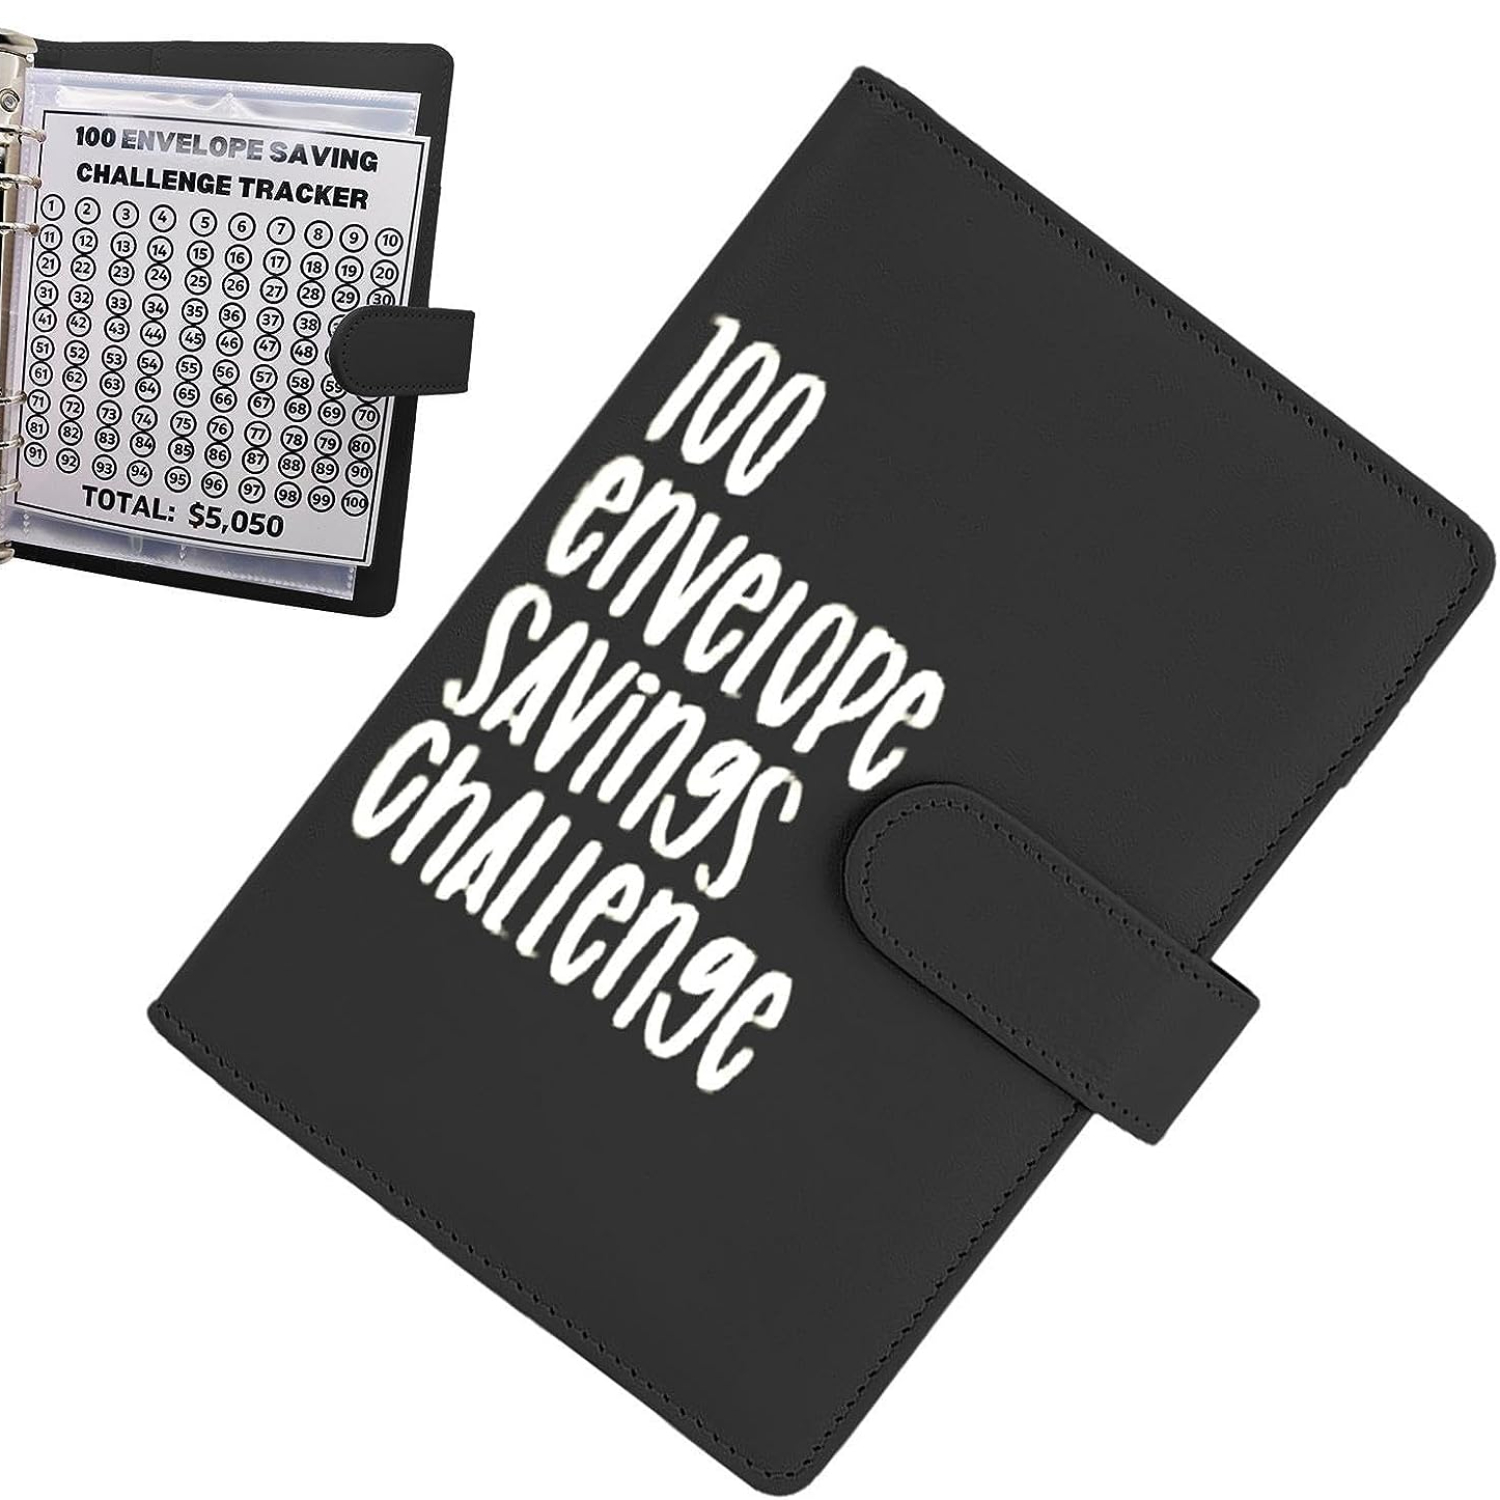  Carpeta de desafío de ahorro de dinero de 100 sobres, carpeta  de desafío de 100 sobres, libro divertido y organizado para ahorrar dinero  para ahorrar $5050 en 100 depósitos (rosa) : Productos de Oficina